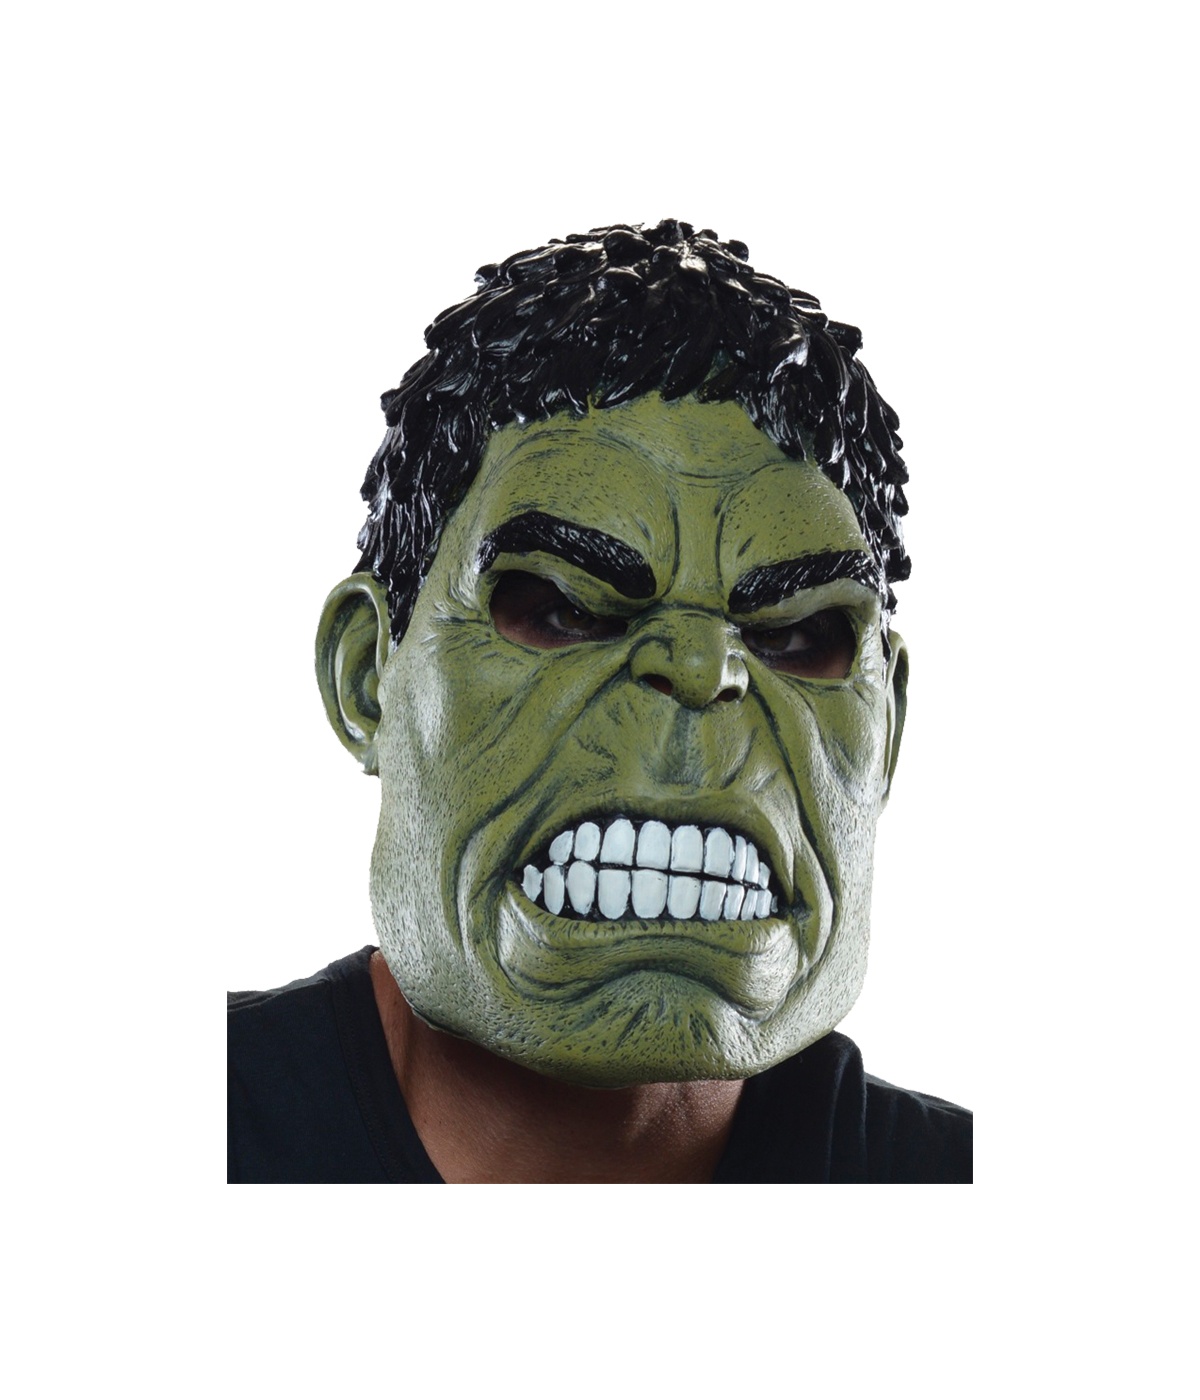  Avengers Age Ultron Hulk Mask